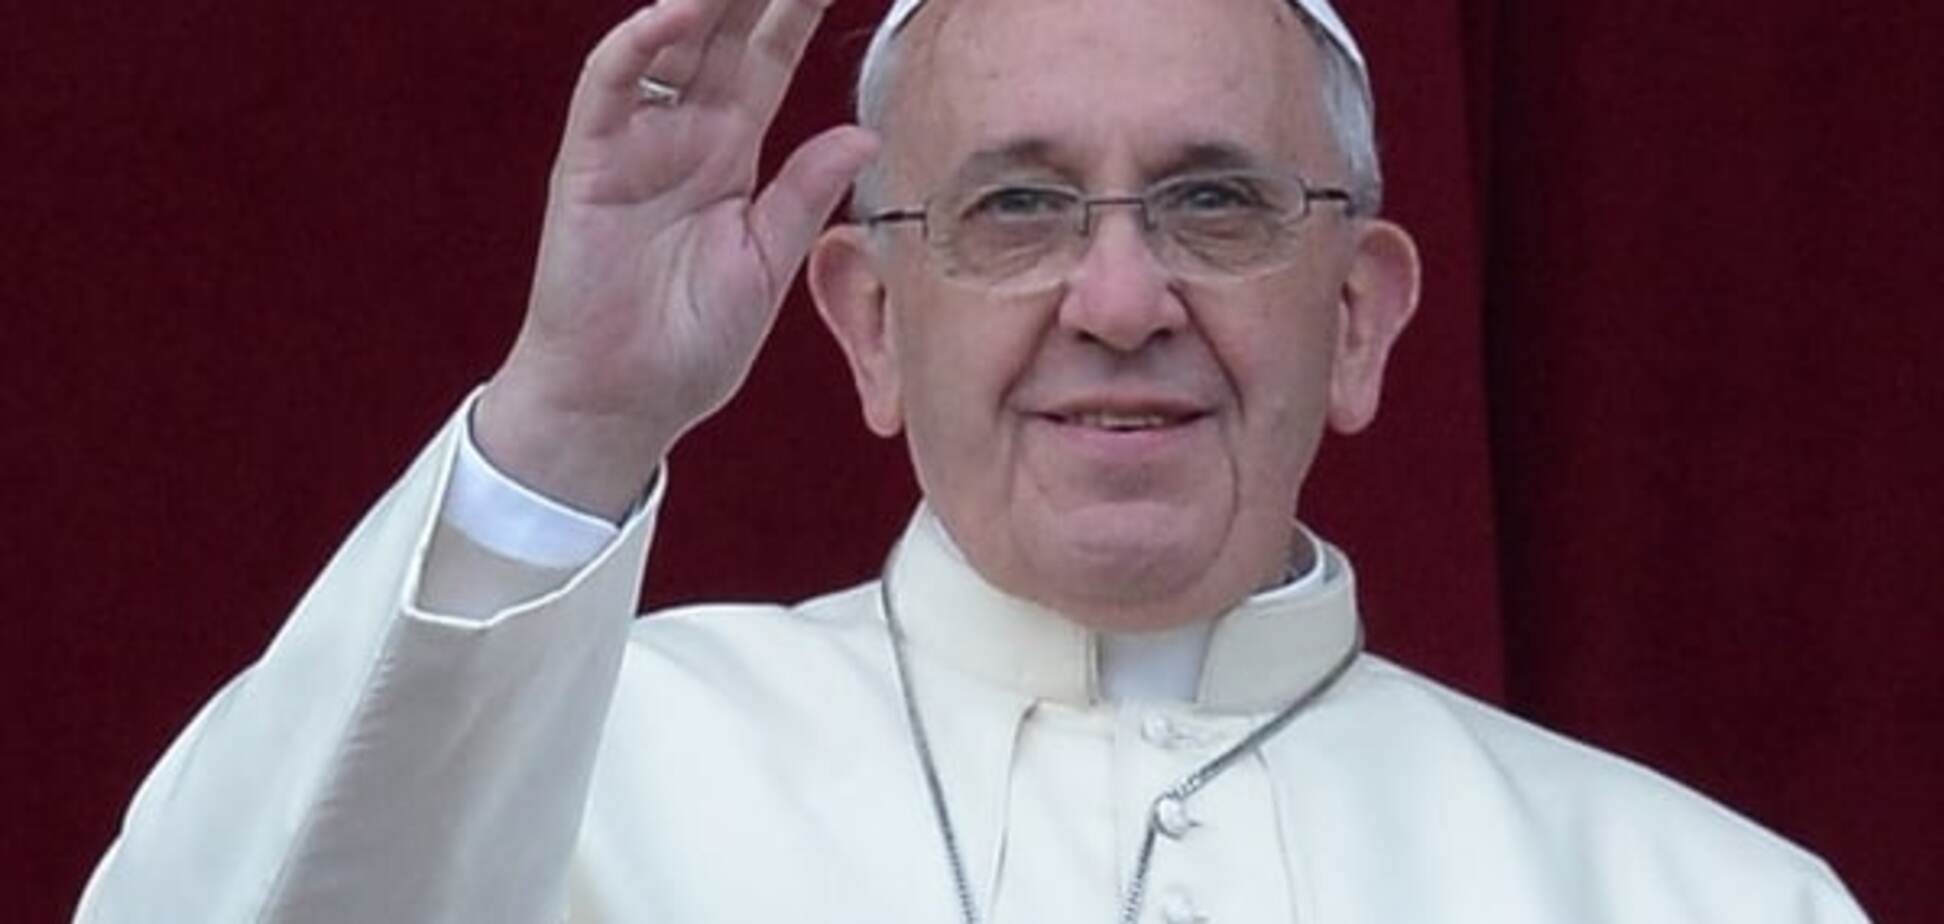 Озбройтеся любов'ю: Папа Римський назвав християн і мусульман братами